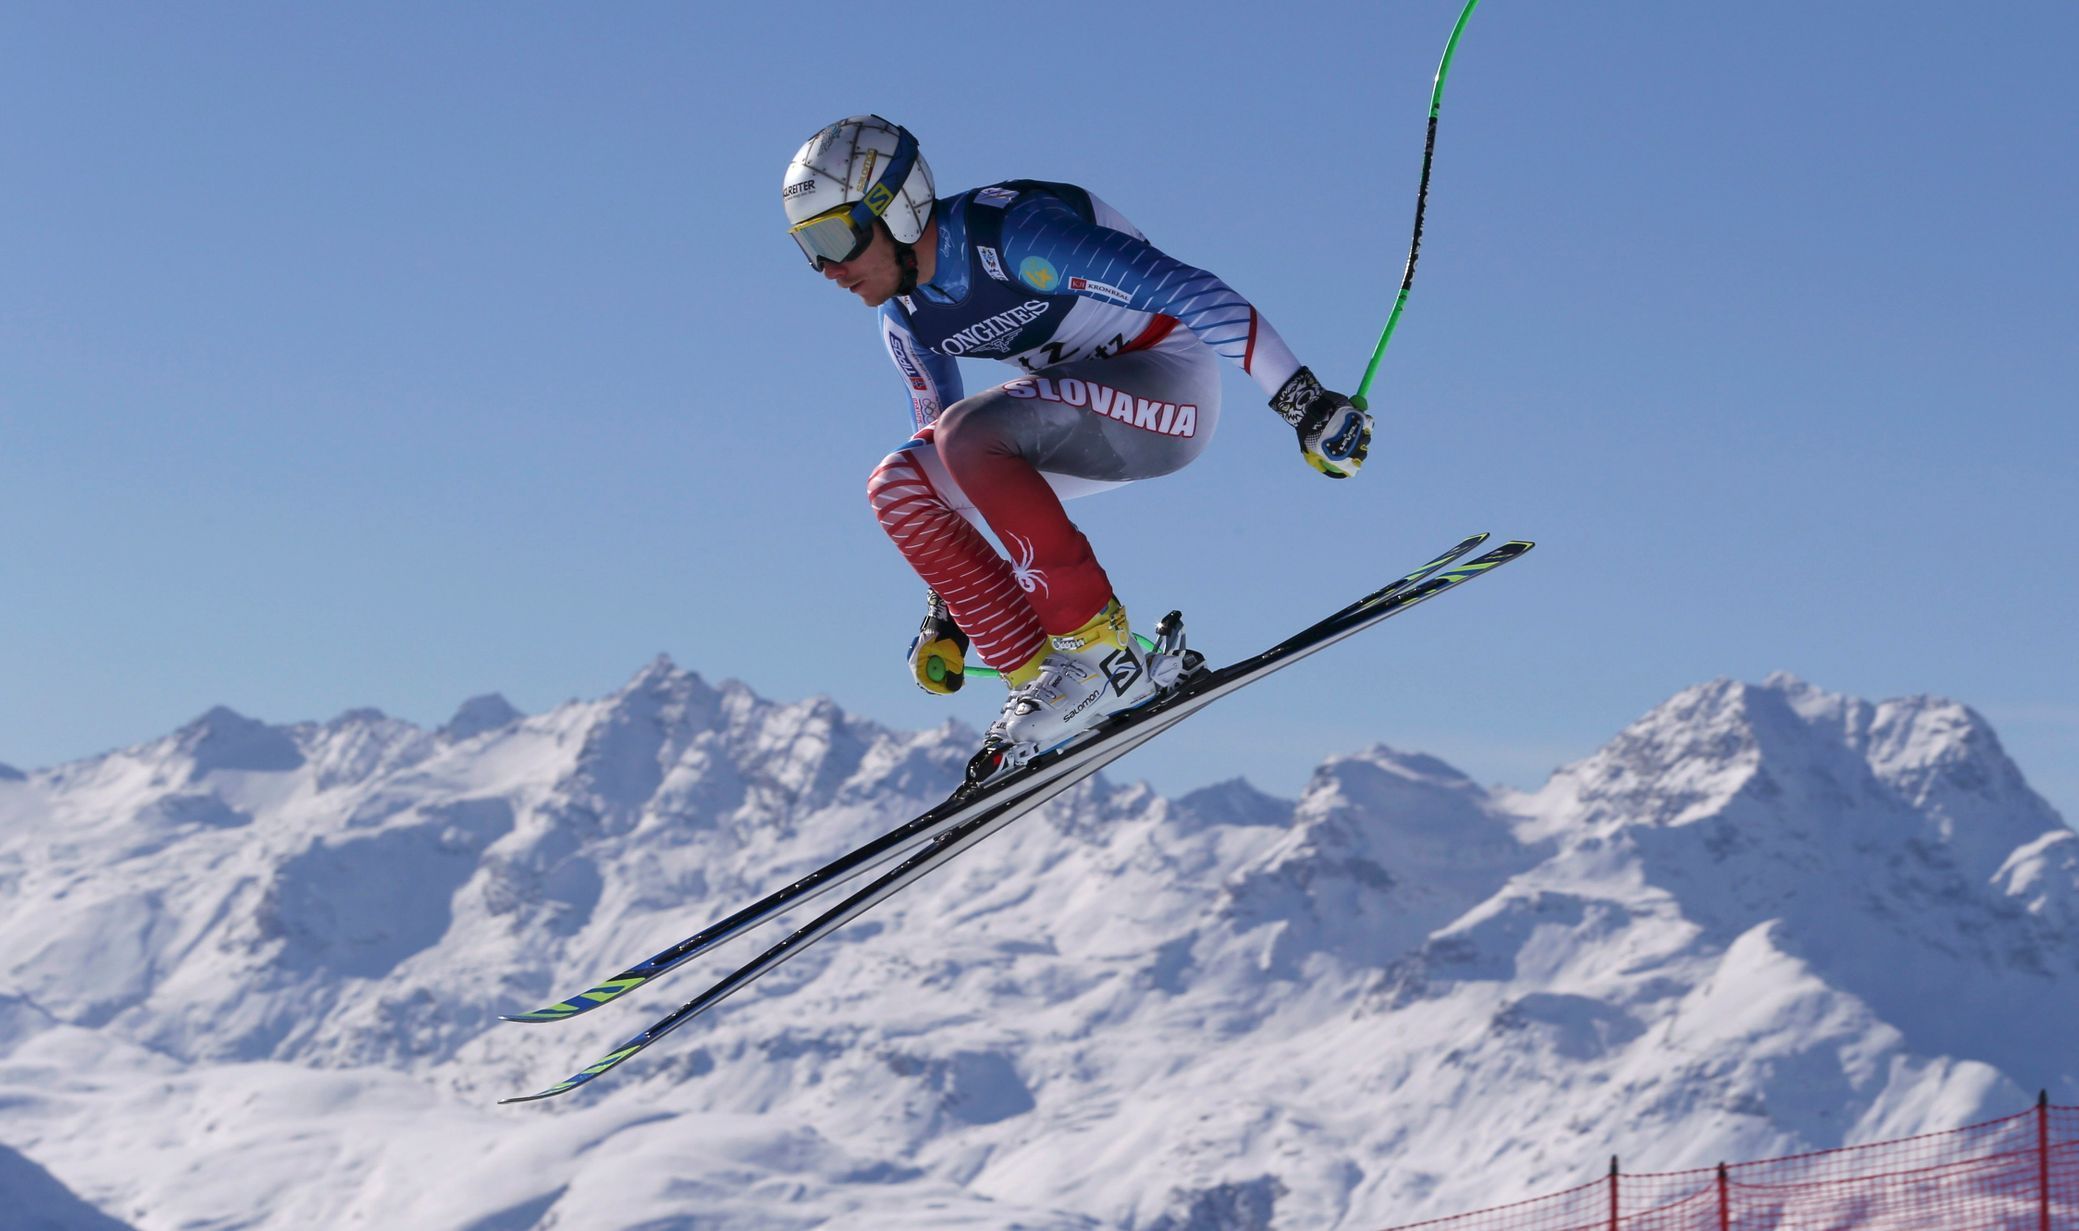 MS 2017 ve sjezdovém lyžování ve Svatém Mořici, kombinace mužů: Adam Žampa